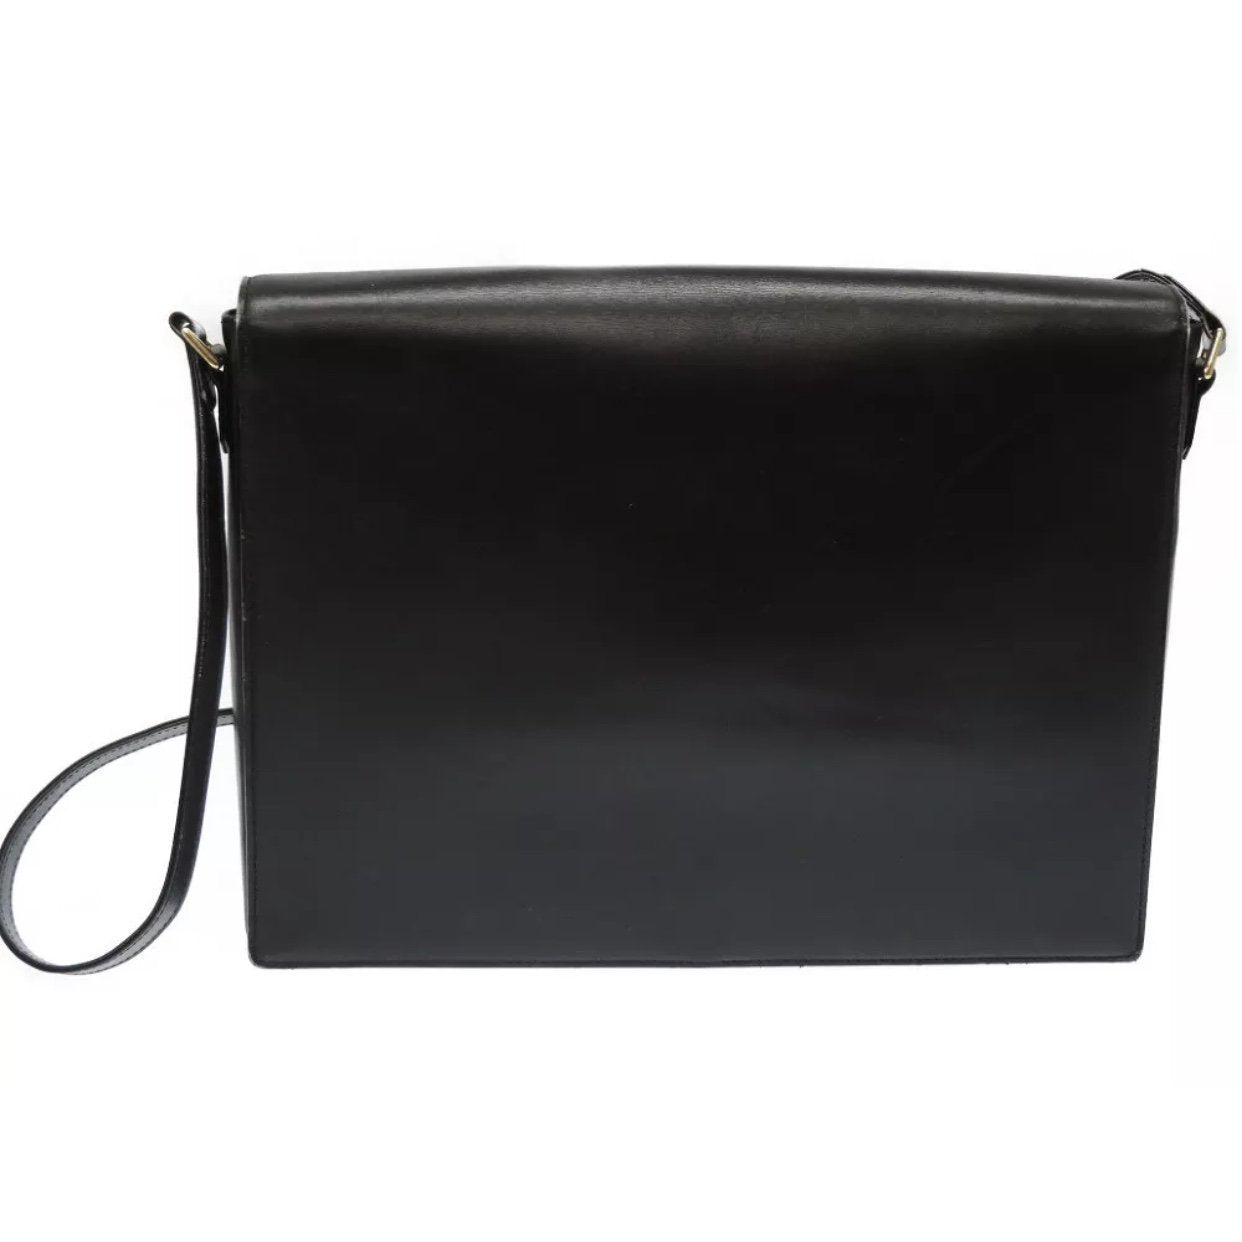 Louis Vuitton Néonoé Black Leather Shopper Bag (Pre-Owned) - ShopStyle